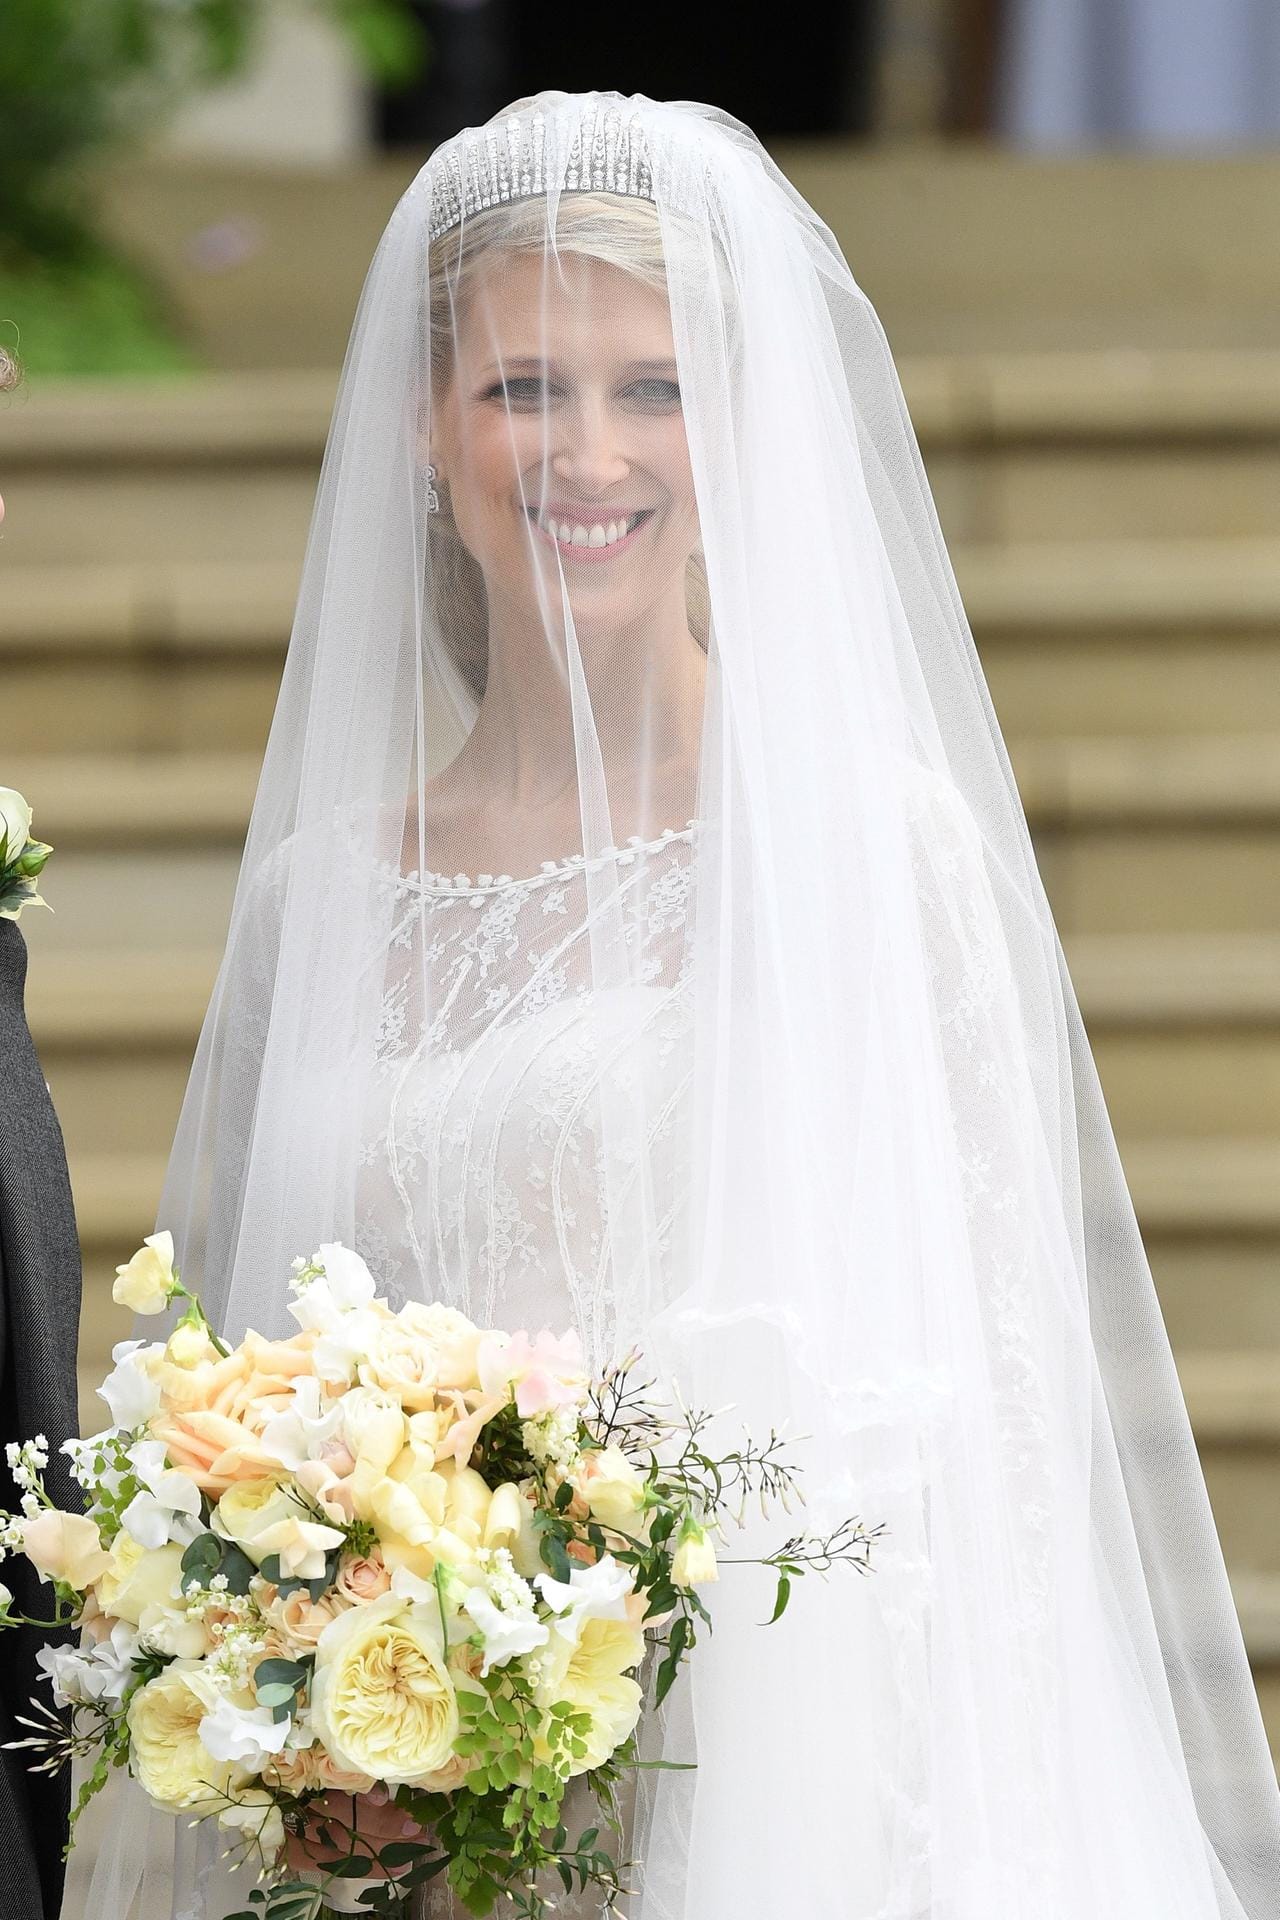 Die 38-Jährige ist bereits die dritte Royal, die innerhalb eines Jahres auf Schloss Windsor geheiratet hat.